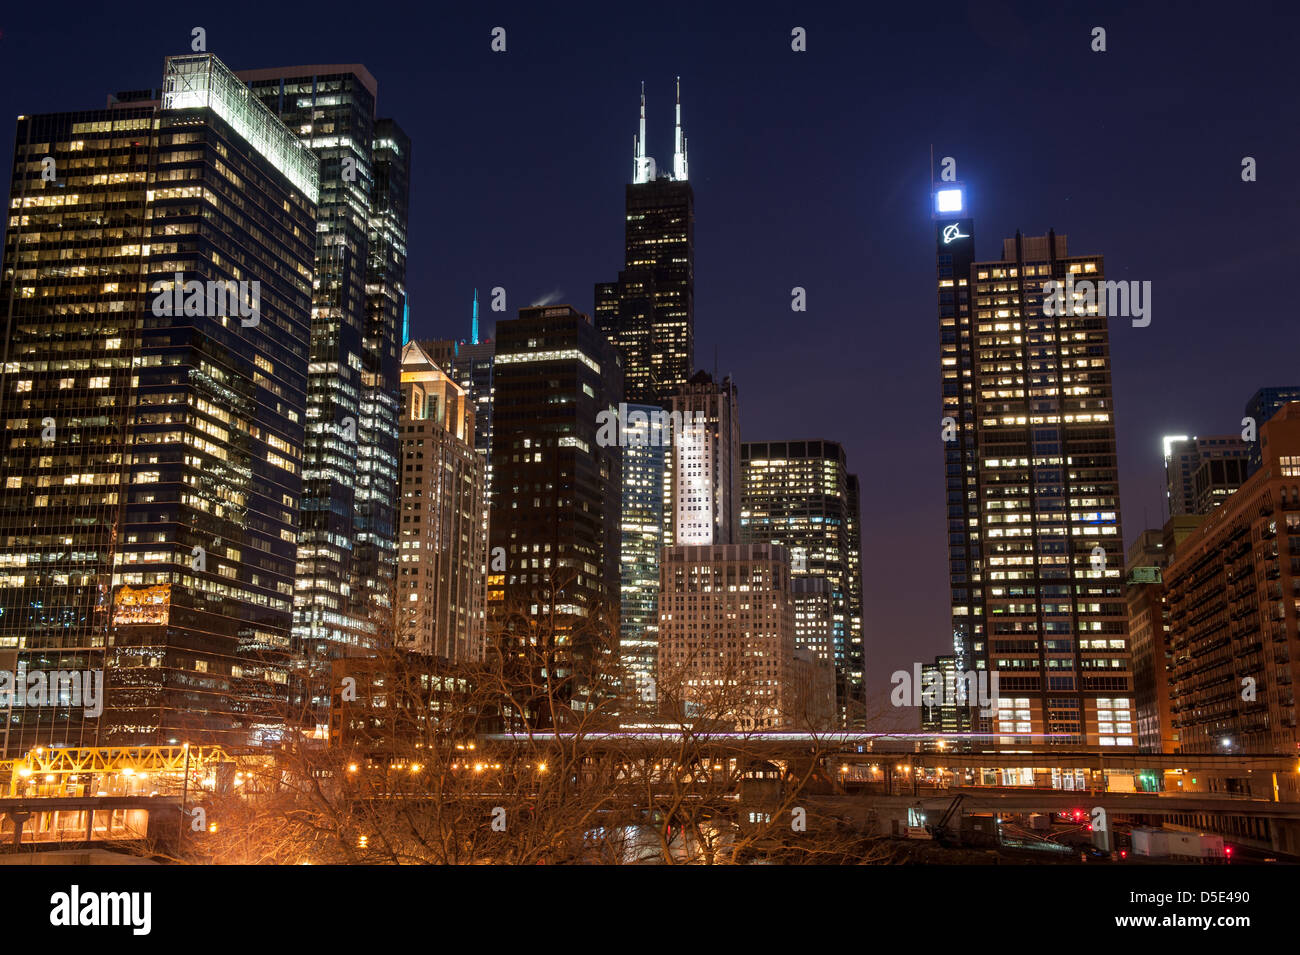 CHICAGO - 28. März: Ein Blick auf die Skyline von Chicago in der Nacht einschließlich der Willis Tower in Chicago, USA am 28. März 2013. Stockfoto